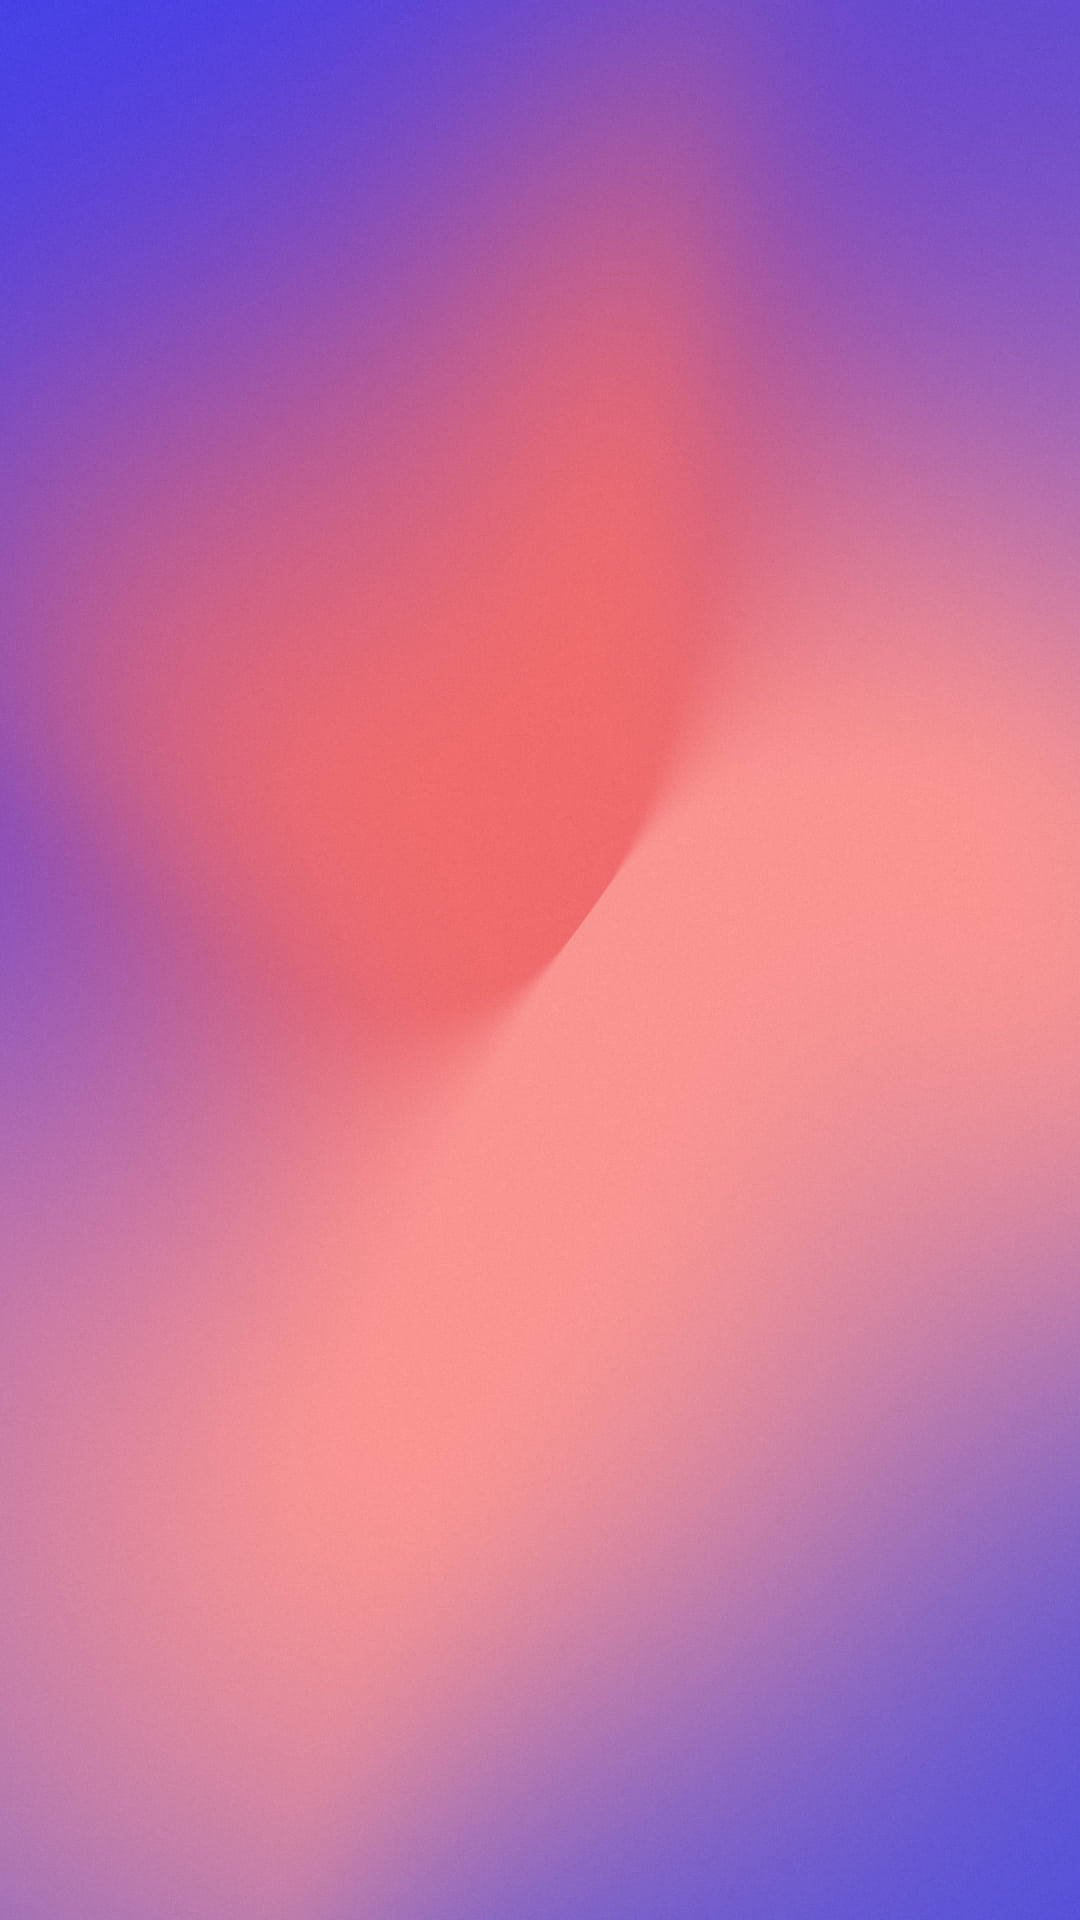 Pixel3 Xl Degradado Rosa Y Morado Fondo de pantalla